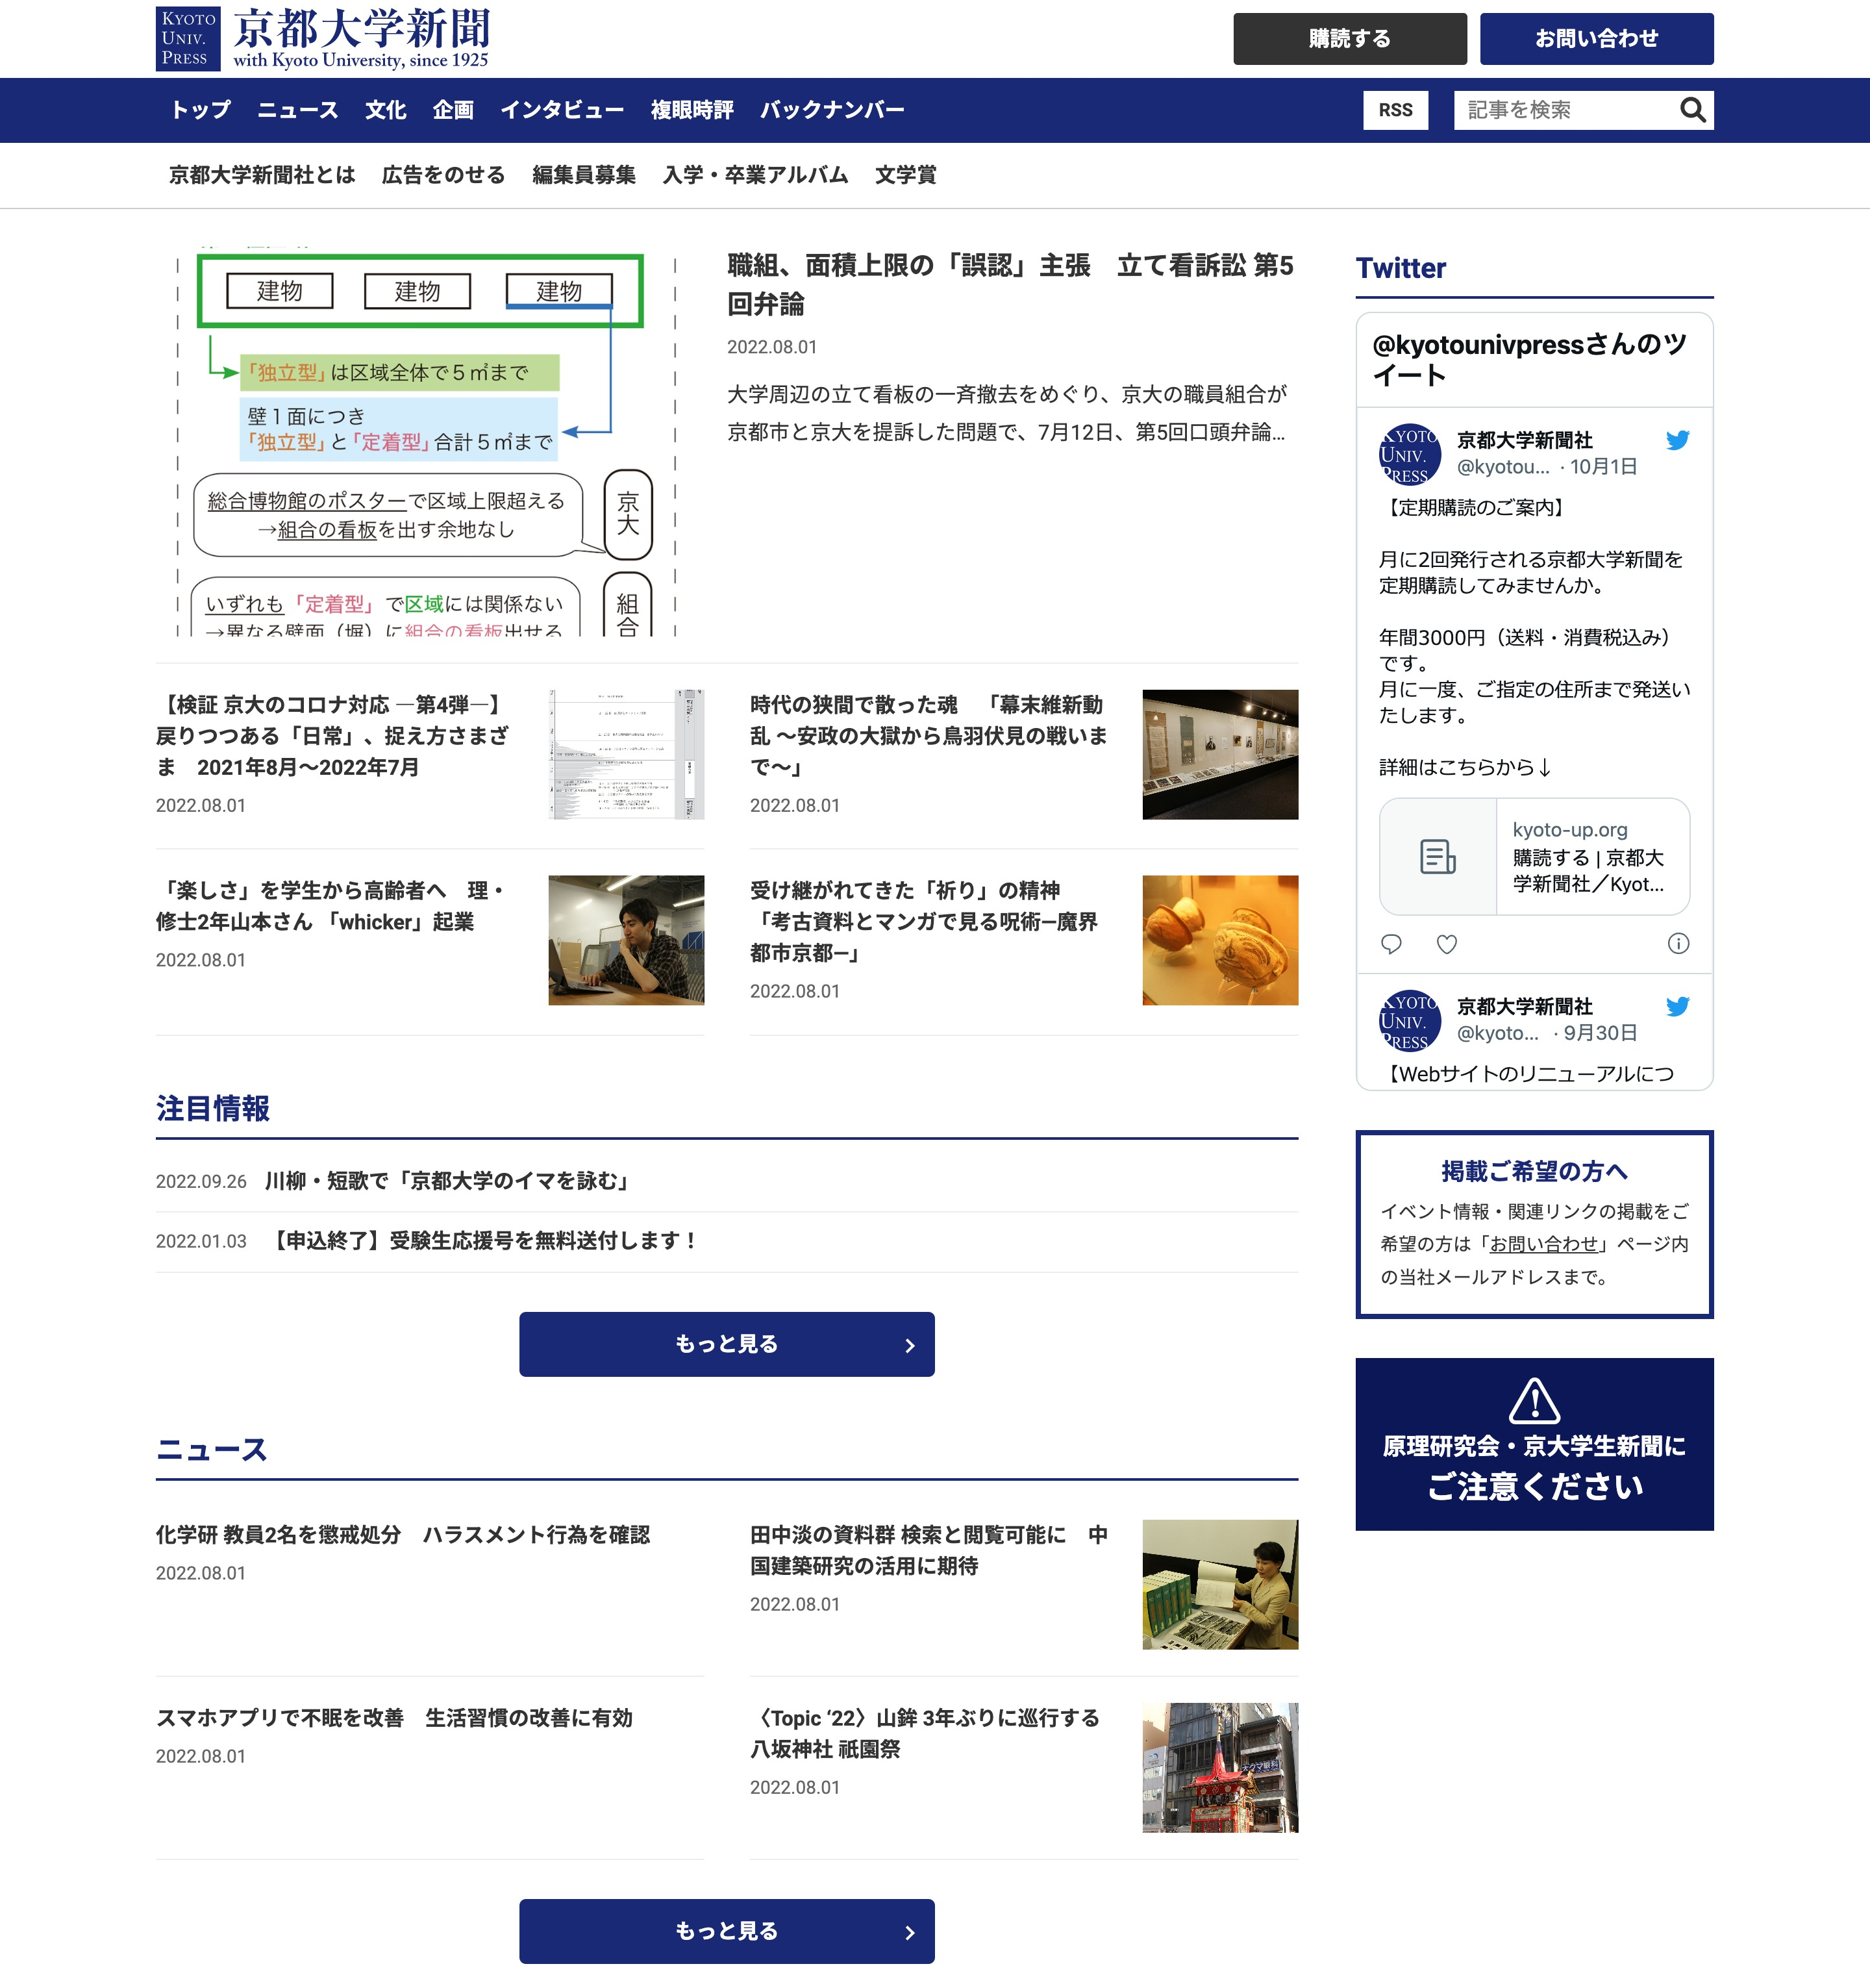 京都大学新聞社さまWebサイト